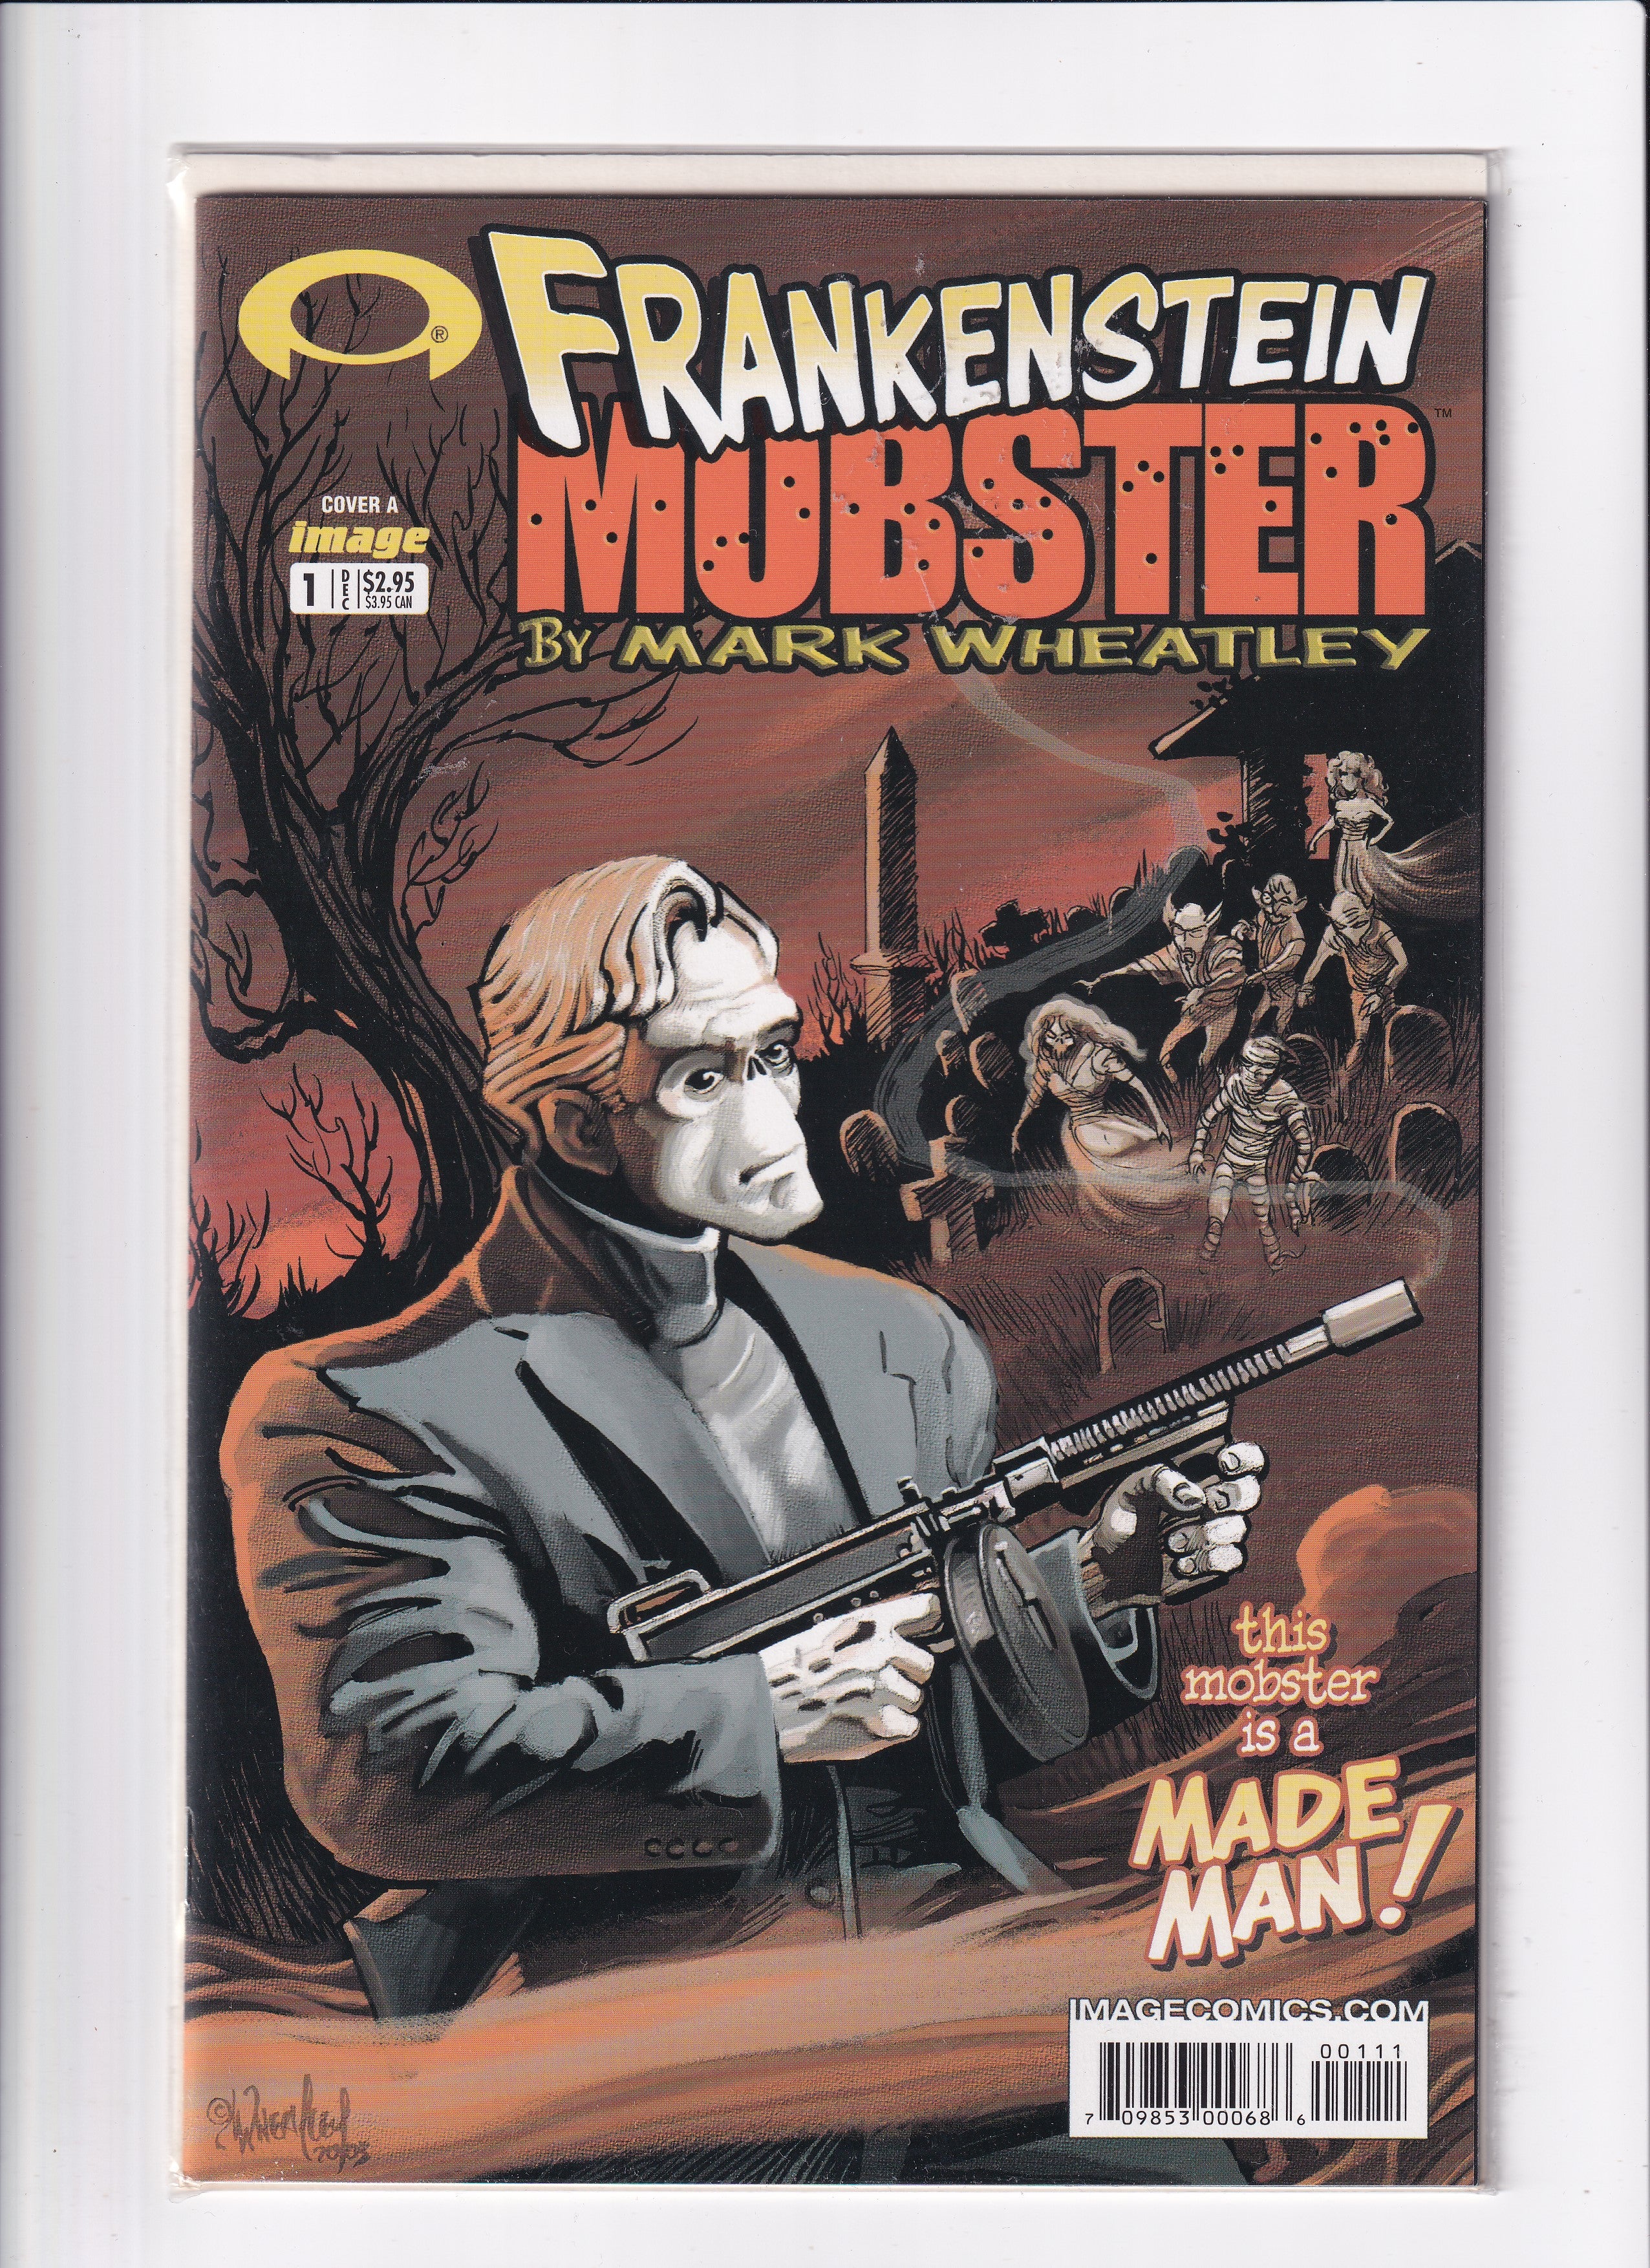 FRANKENSTEIN MOBSTER #1 - Slab City Comics 